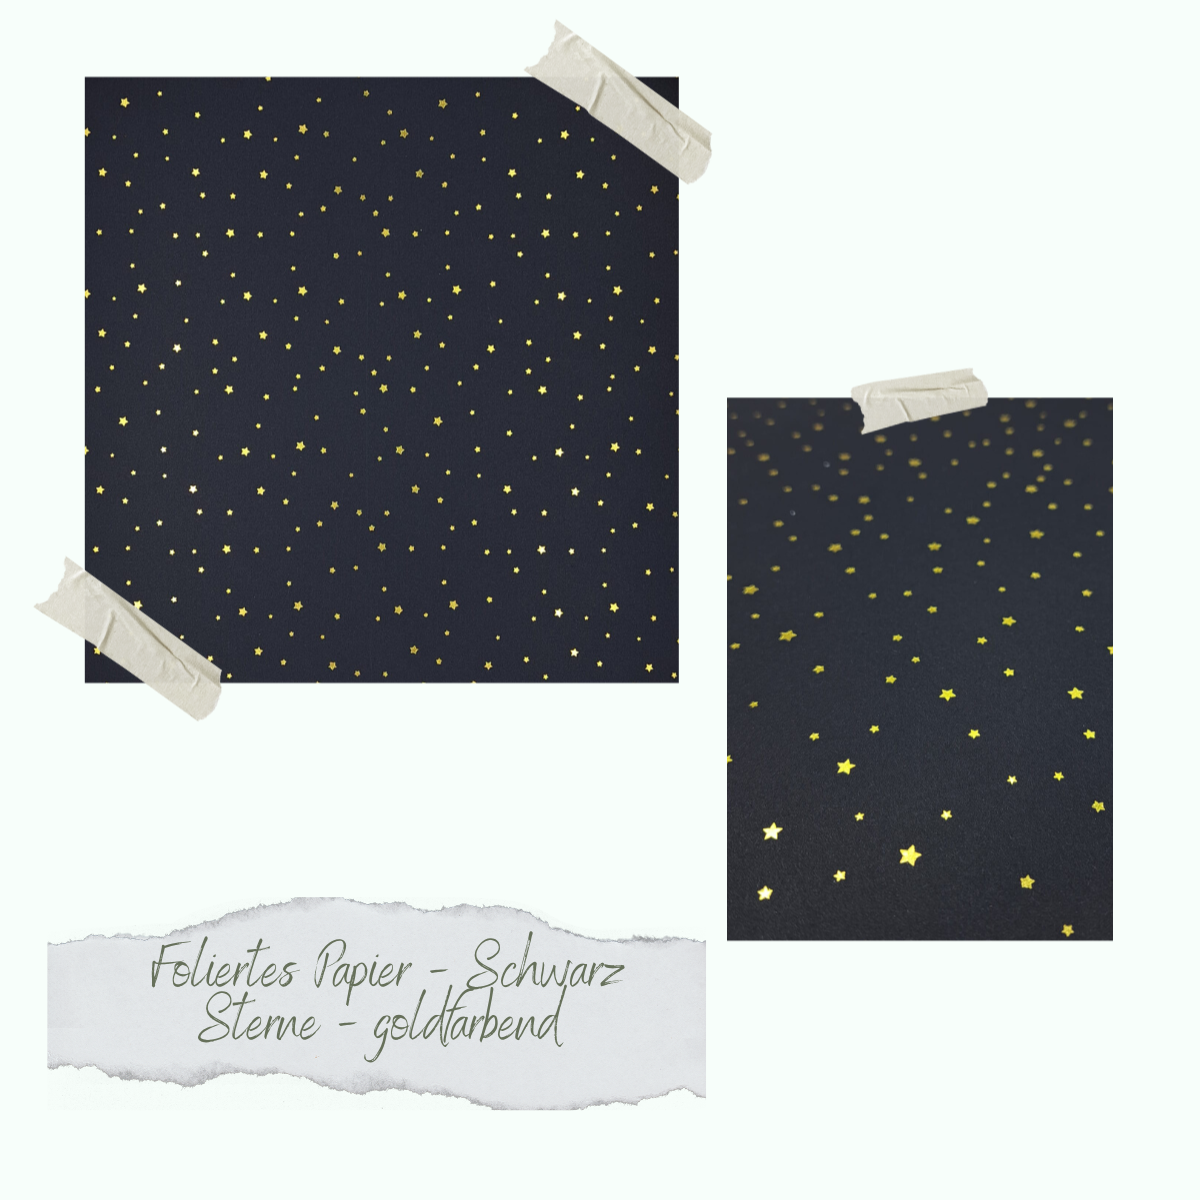 Foliertes Papier - Schwarz - Sterne - goldfarbend